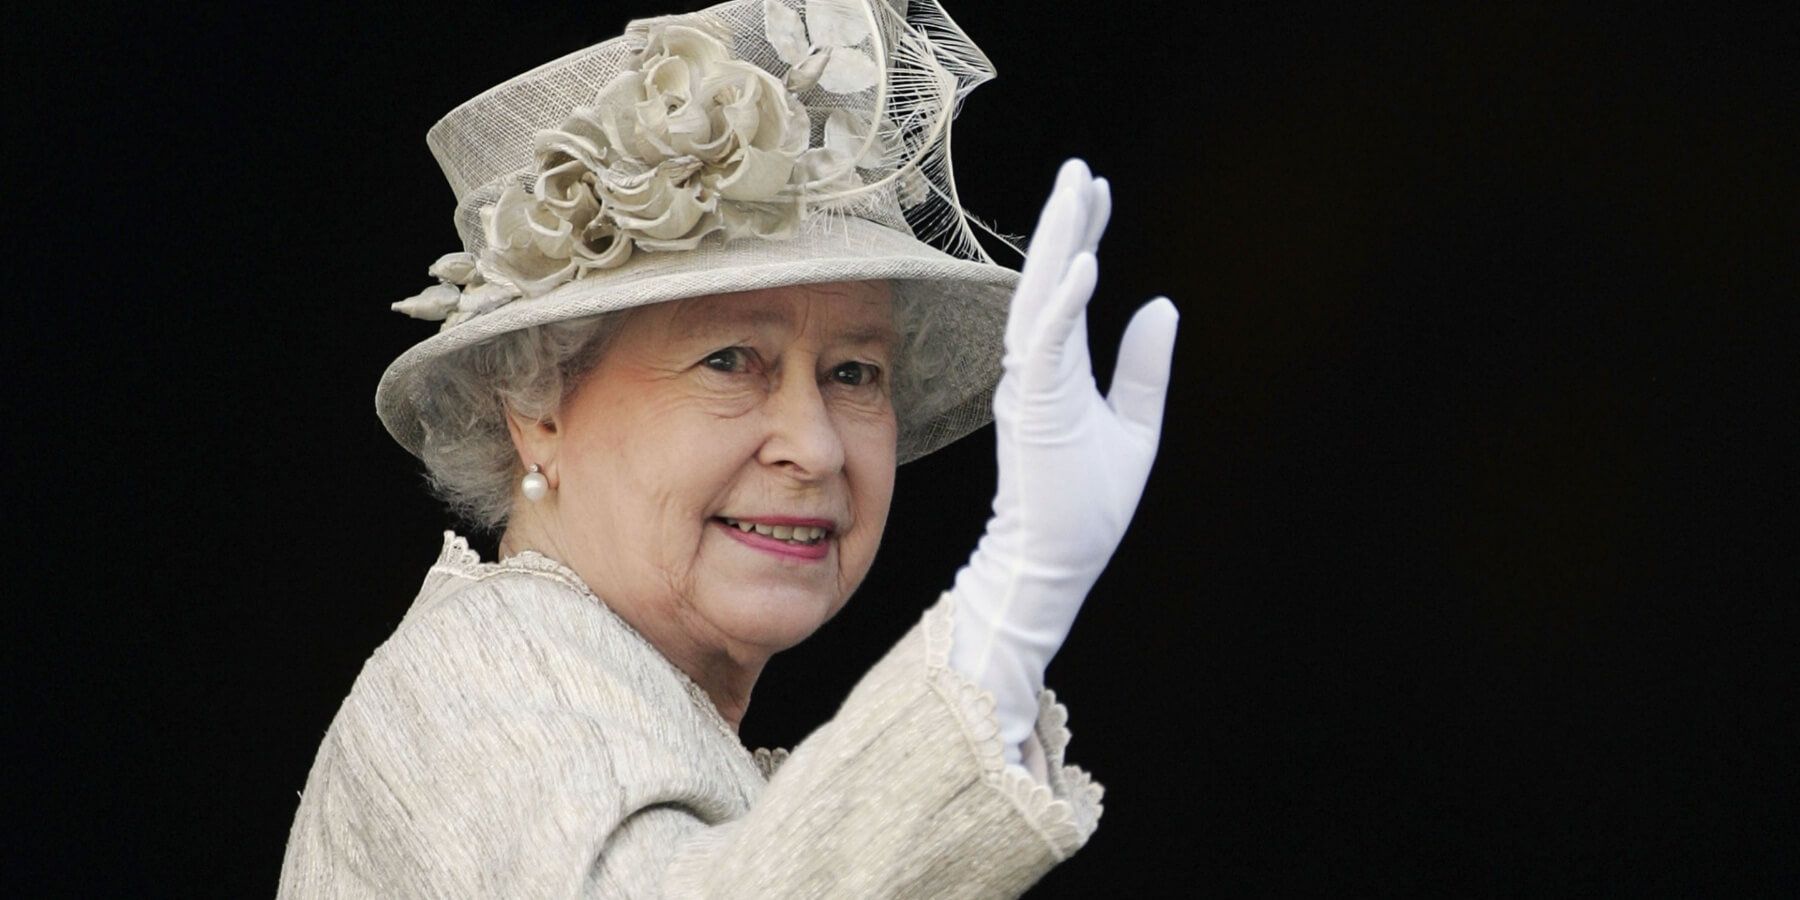 Queen Elizabeth waves to onlookers in 2006 in London, England.